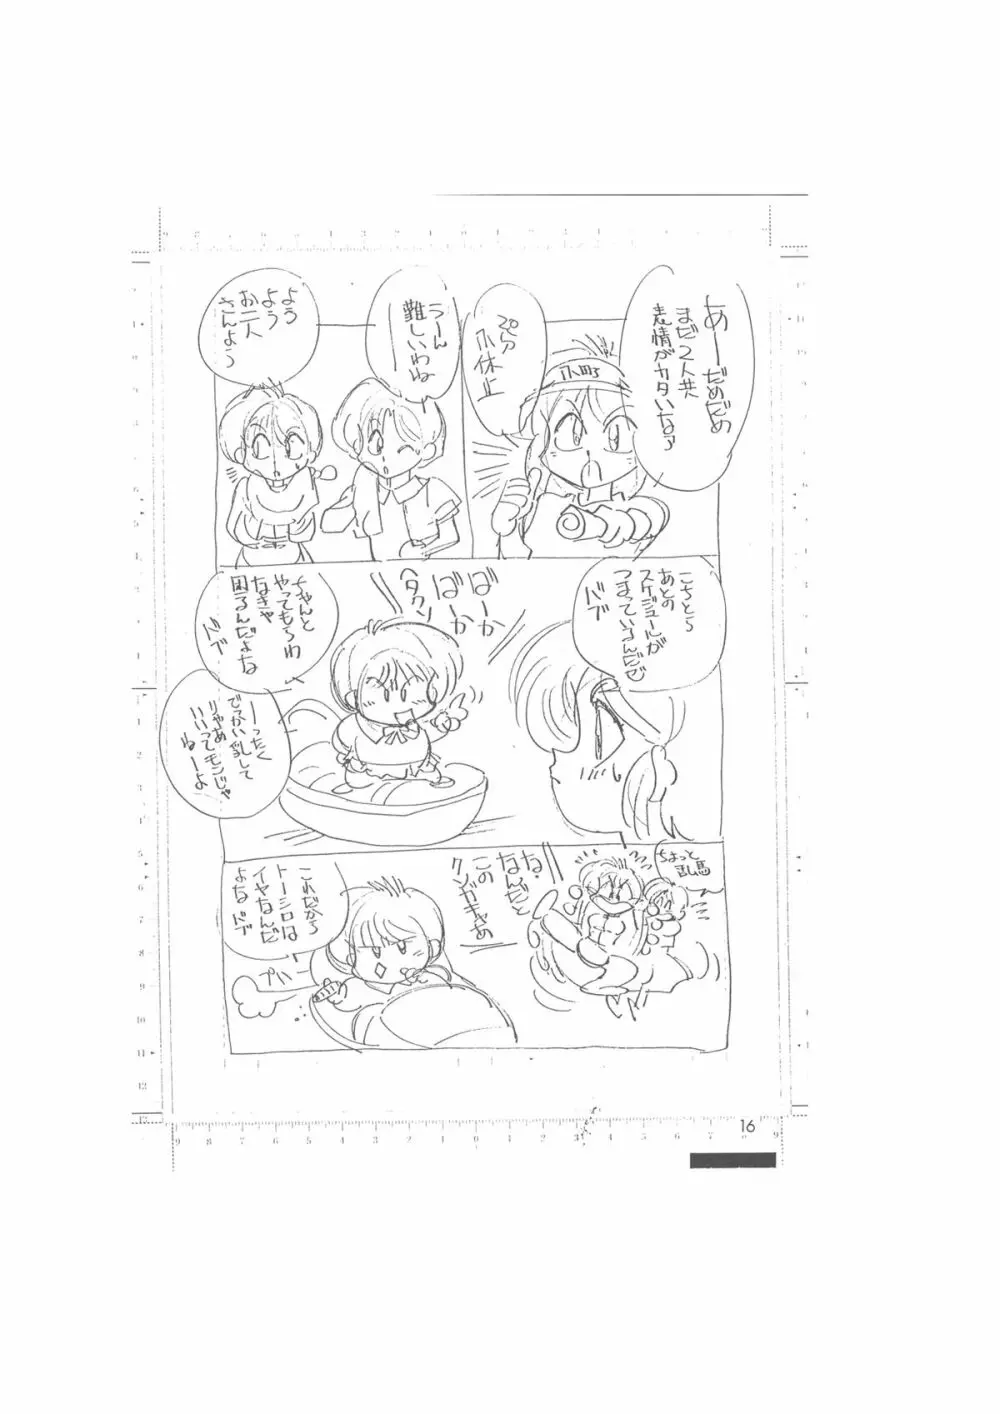 メイキング・オブ・『真・最悪的悲劇』 – A Ranma Doujin Sketch by Dark Zone 16ページ